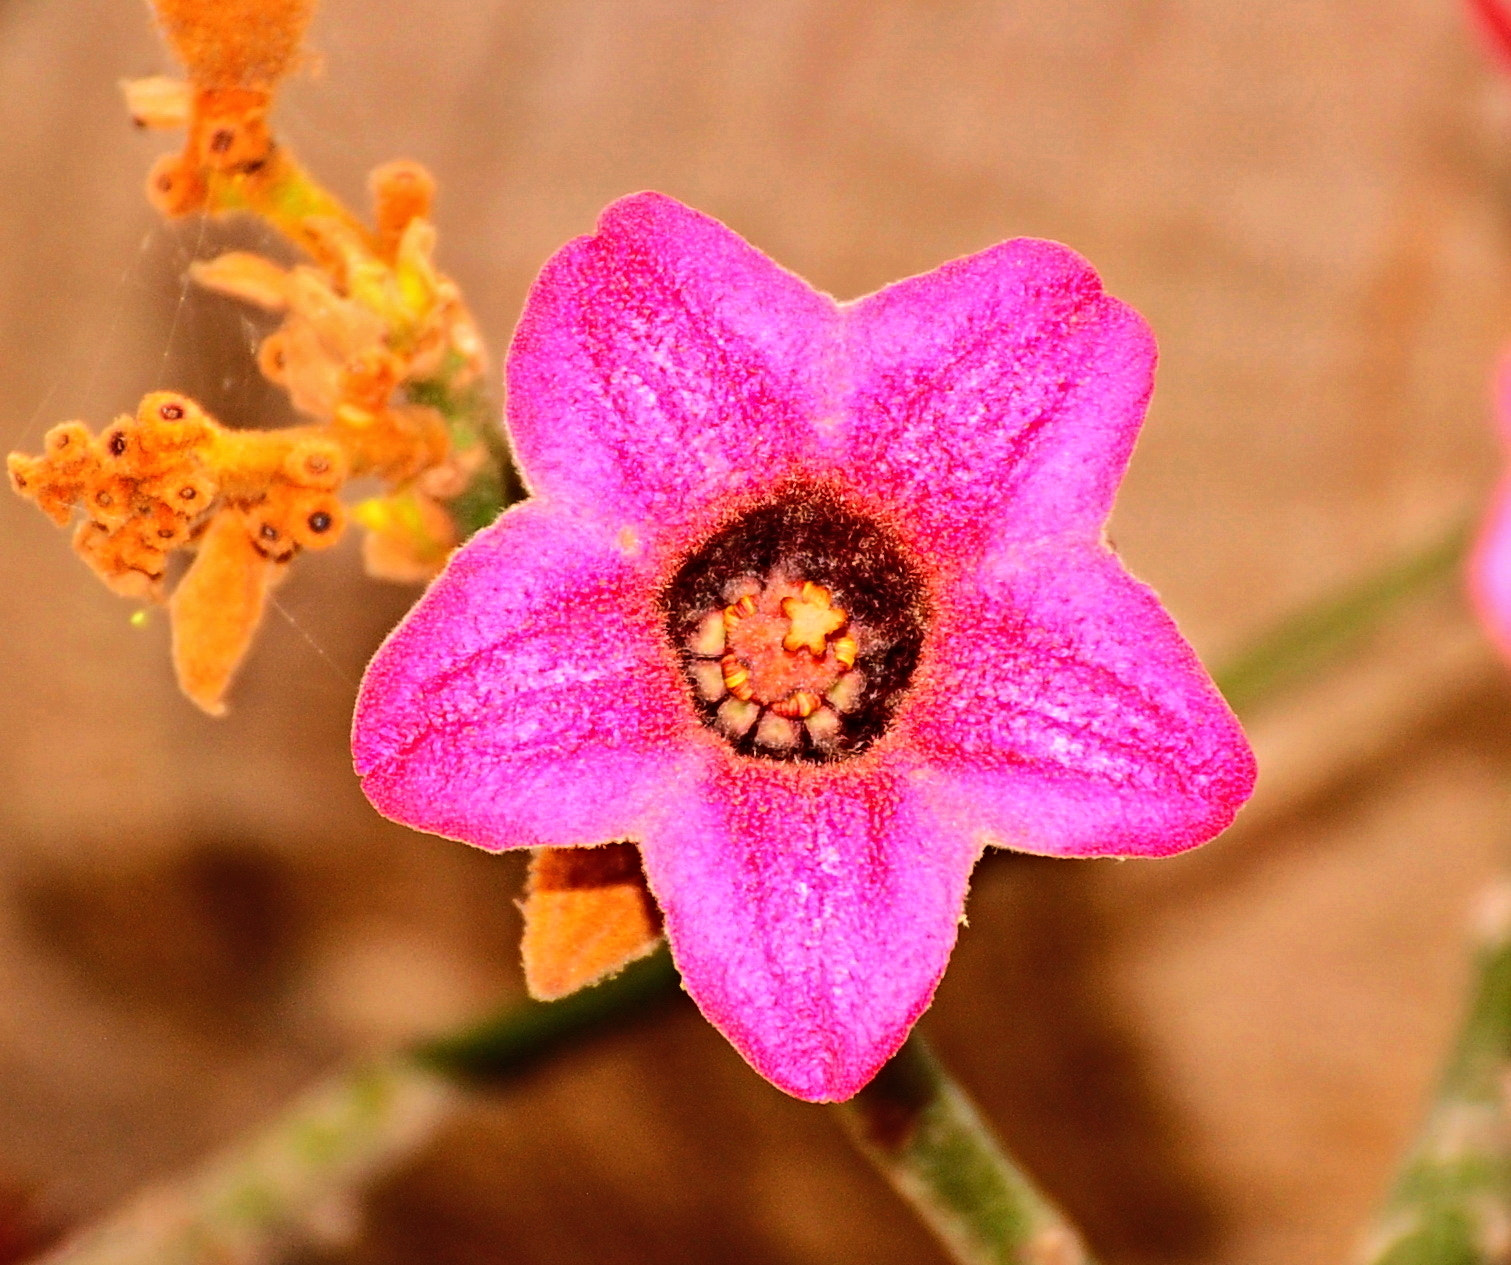 Nikon D90 + Nikon AF-S DX Nikkor 18-140mm F3.5-5.6G ED VR sample photo. Pink cactus flower three photography